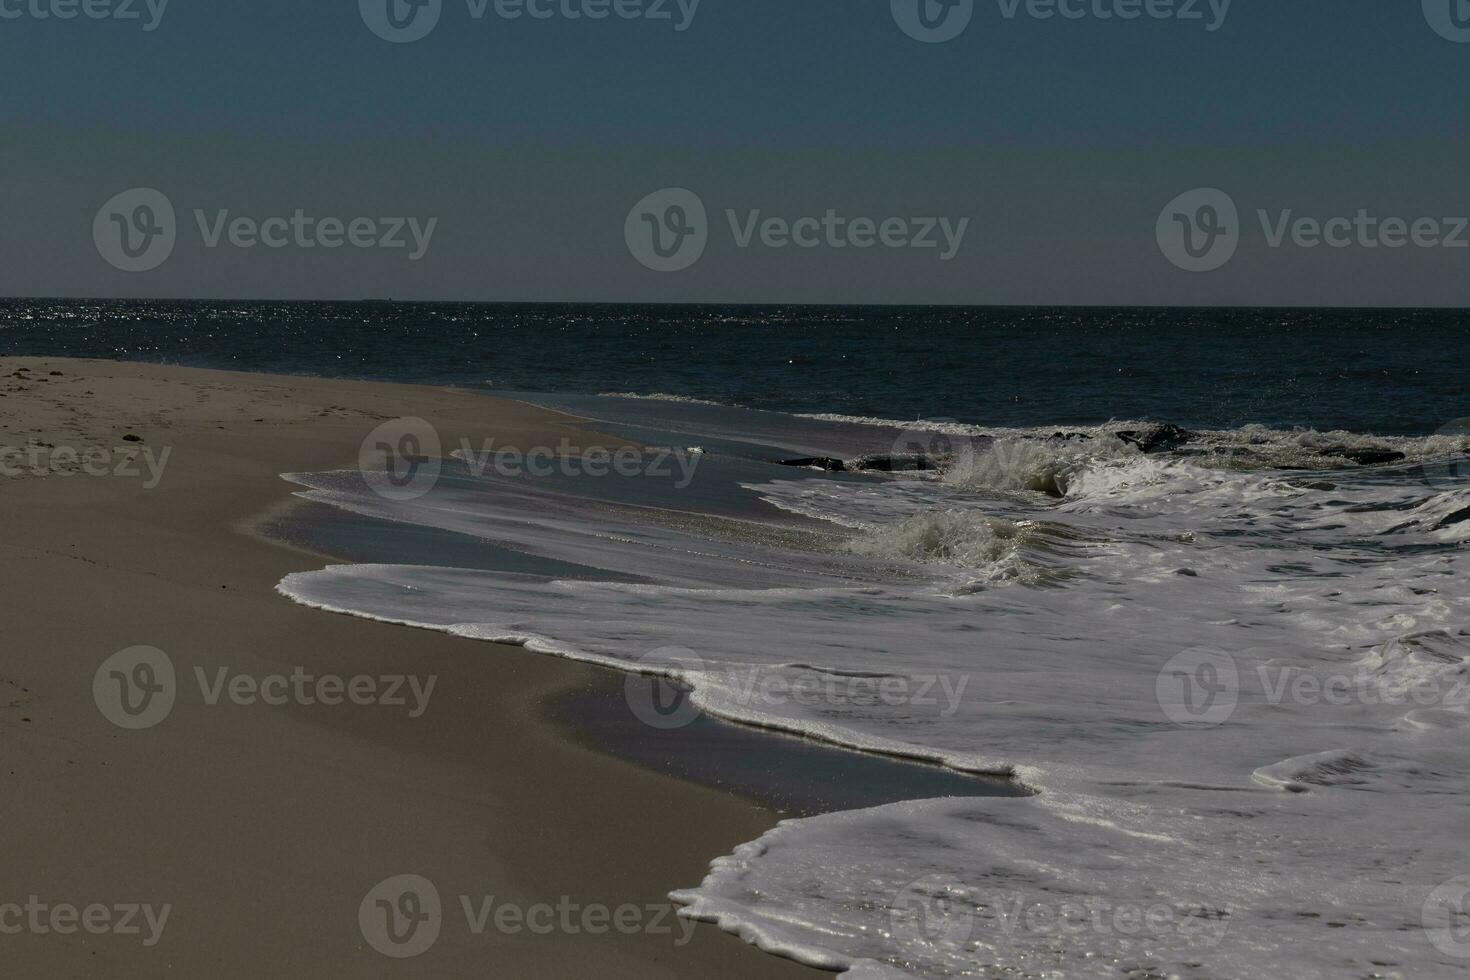 yo amado el Mira de esta playa escena como el olas estrellado en. el bonito Mira de el de capa blanca navegar corriendo en a el costa. el arena demostración un diferente tono a dónde el agua una vez era. foto